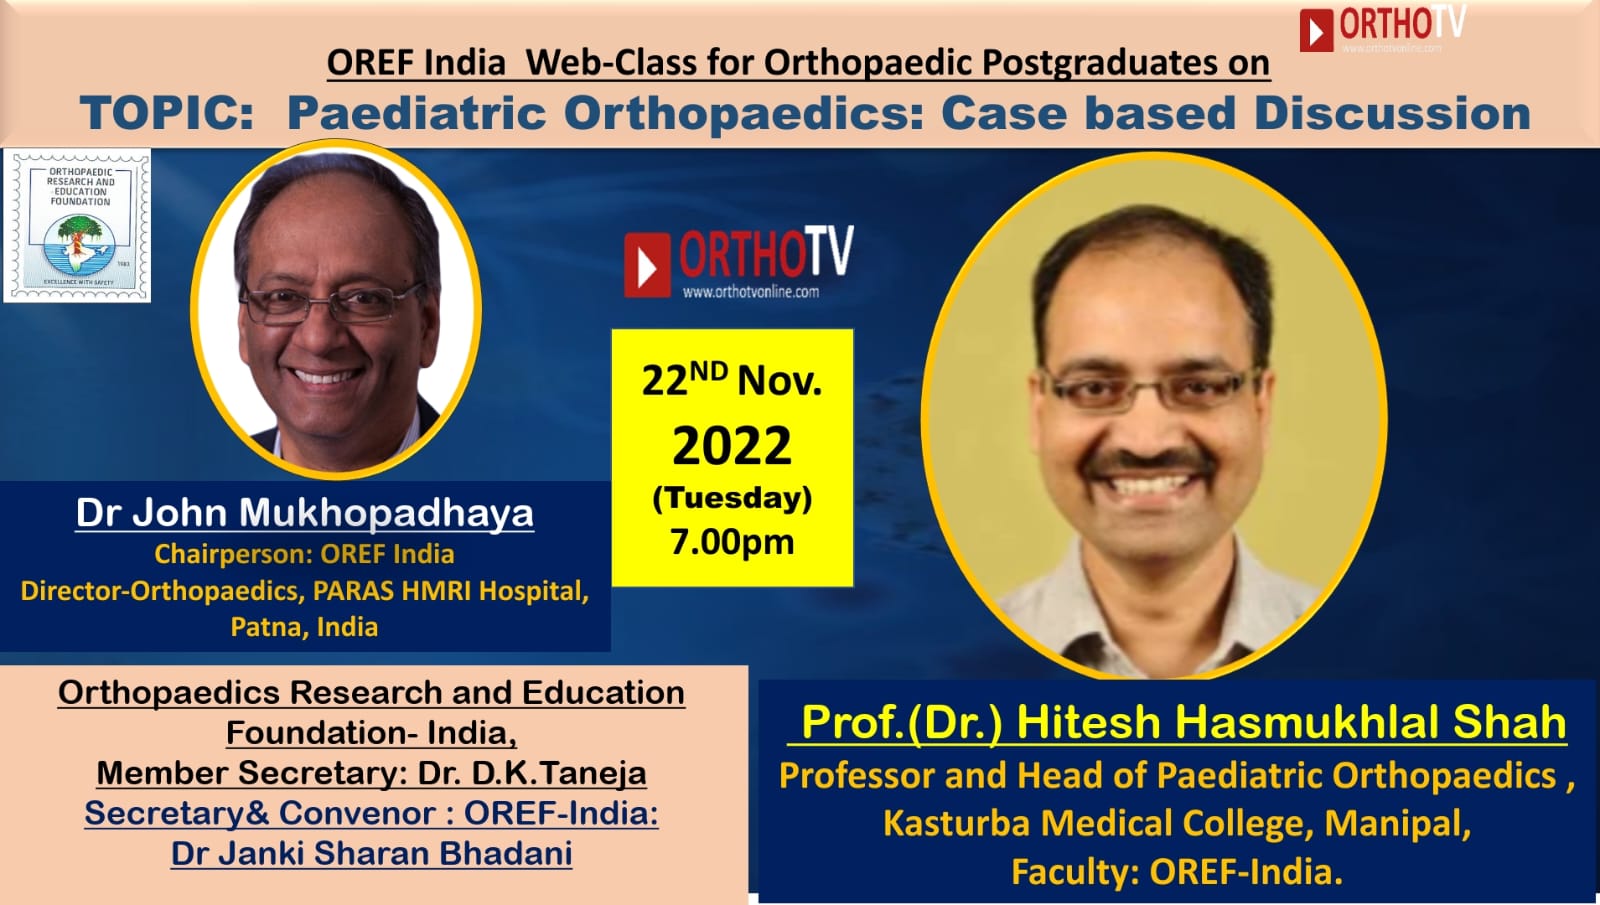 OREF India Webclass for Orthopaedic Post-graduates on OrthoTV - Paediatric Orthopaedics: Case based Discussion